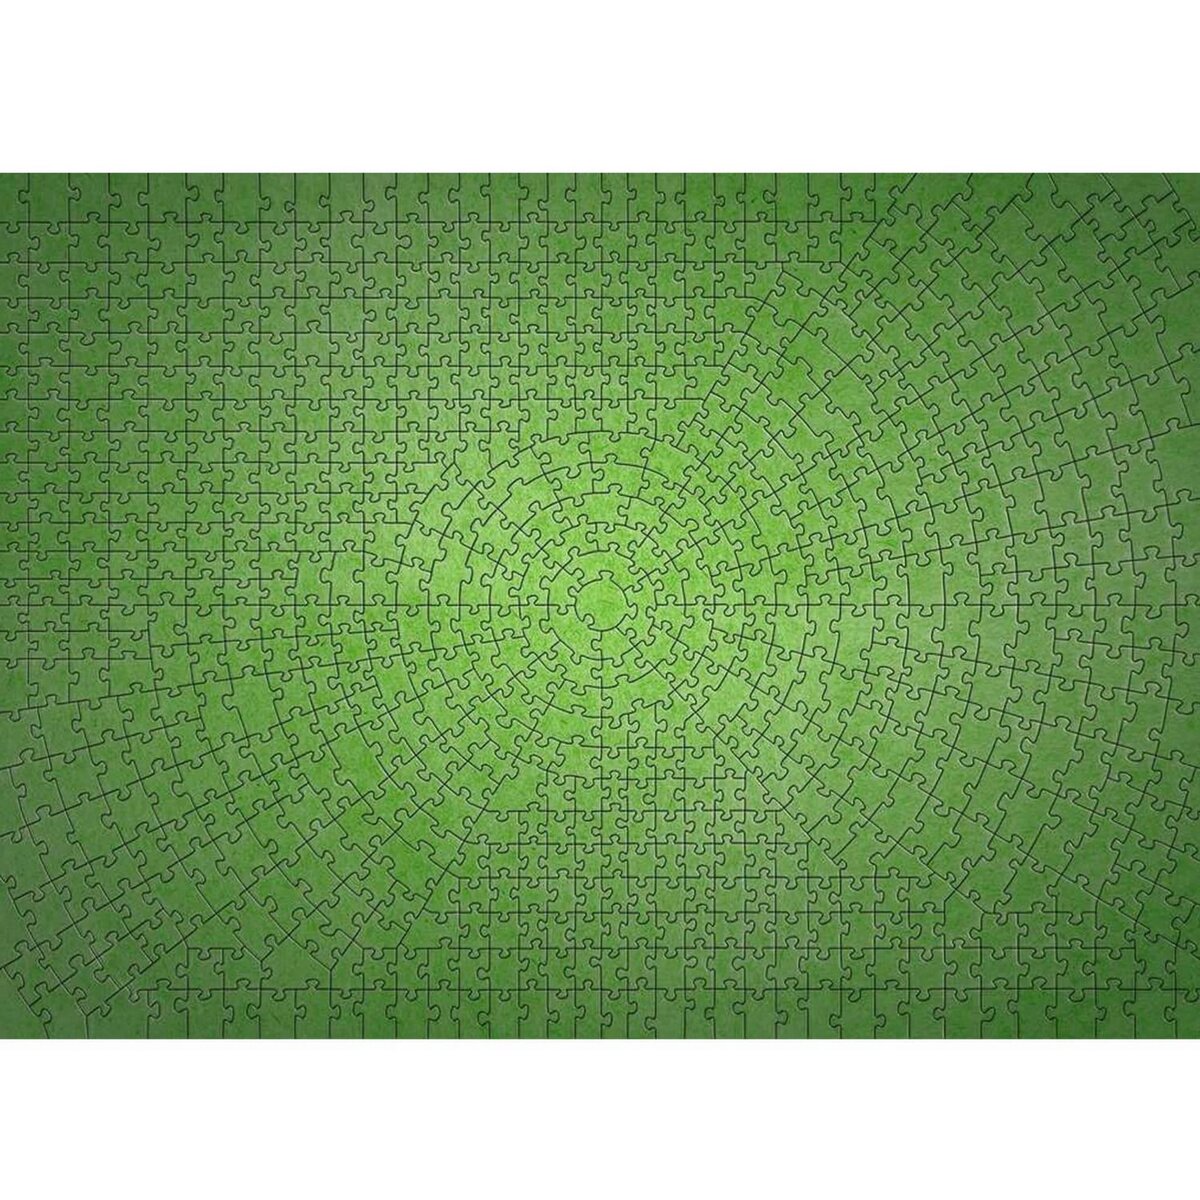 RAVENSBURGER Puzzle 736 pièces : Krypt Puzzle : Néon vert